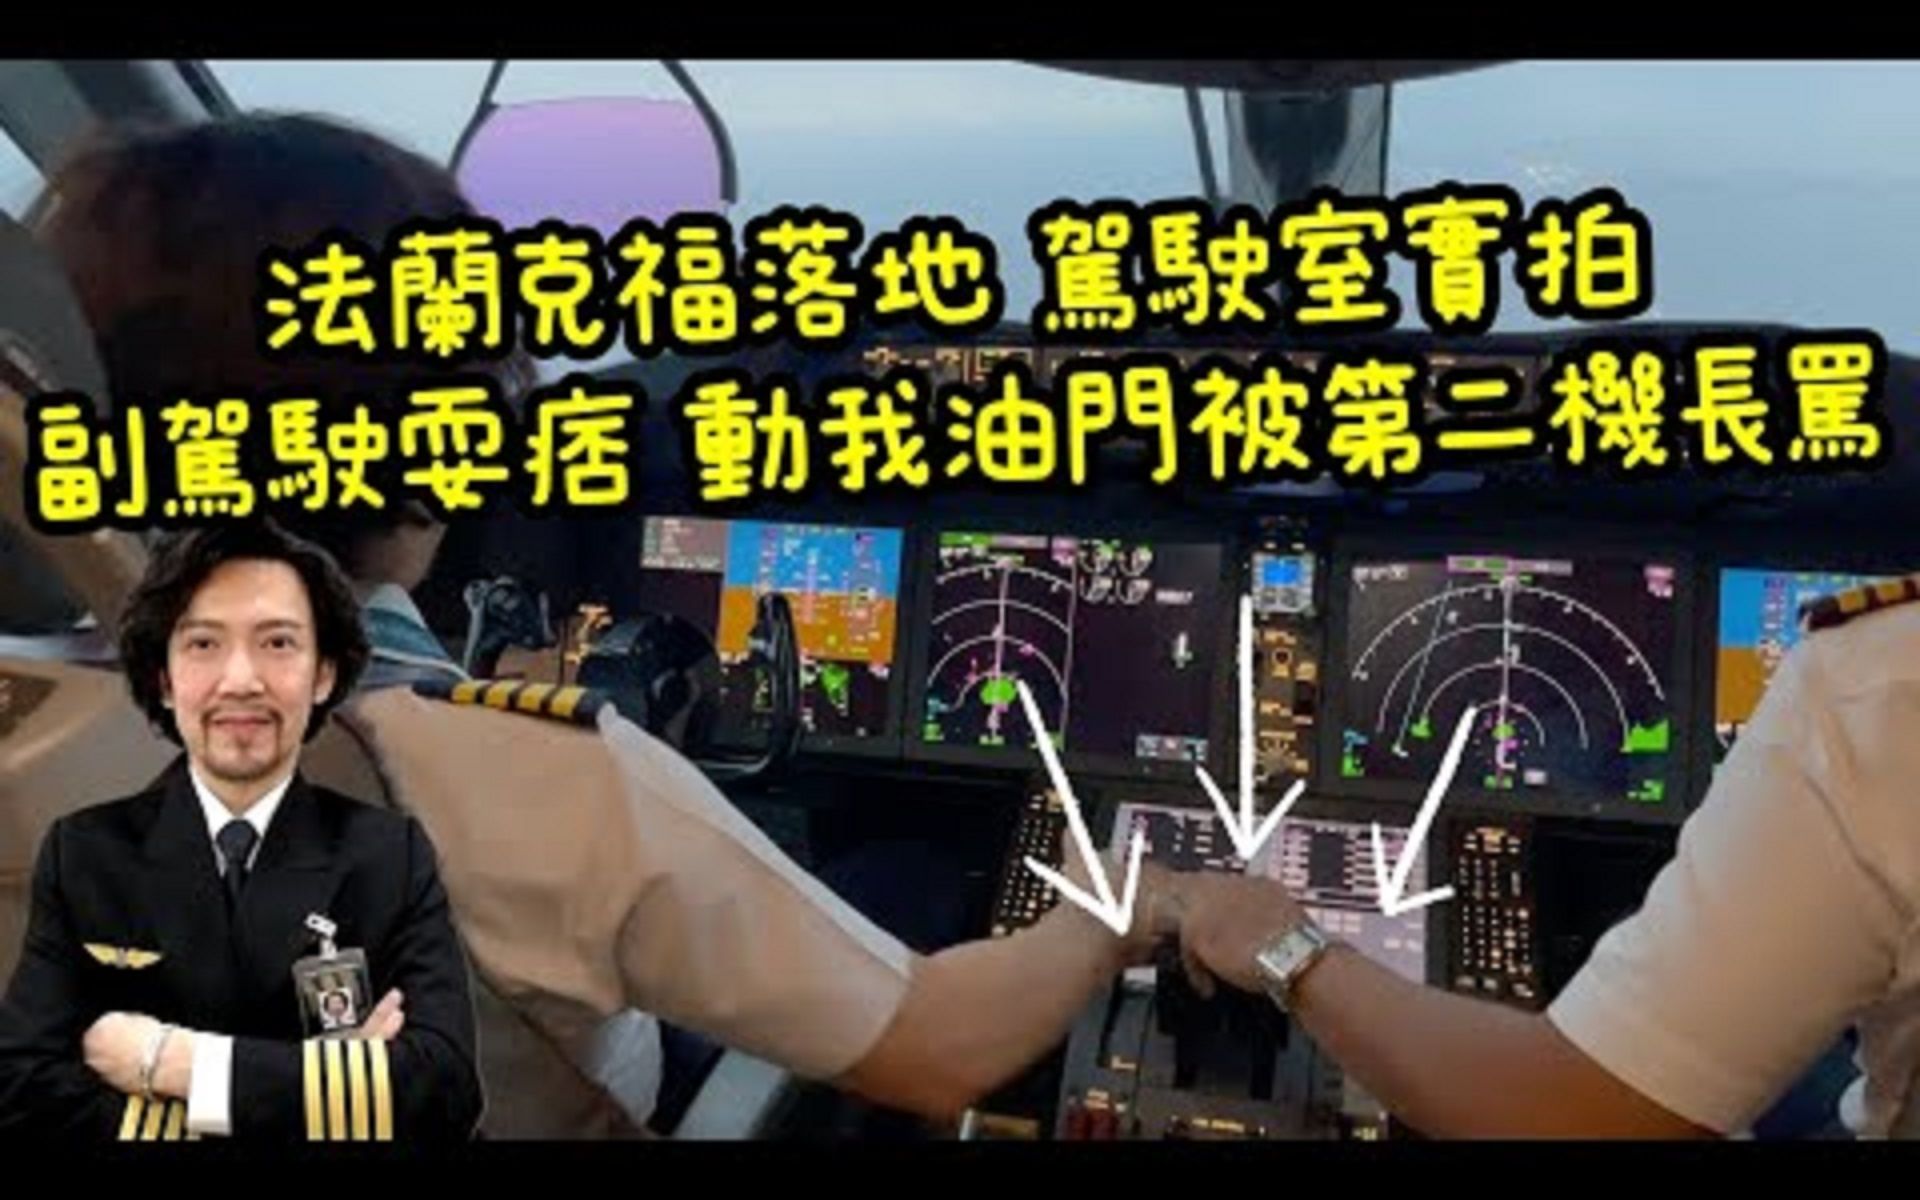 瘋狂機長 詹姆士波音787落地第二機長視角 不守規矩的副駕駛老機長如何處理_1080p